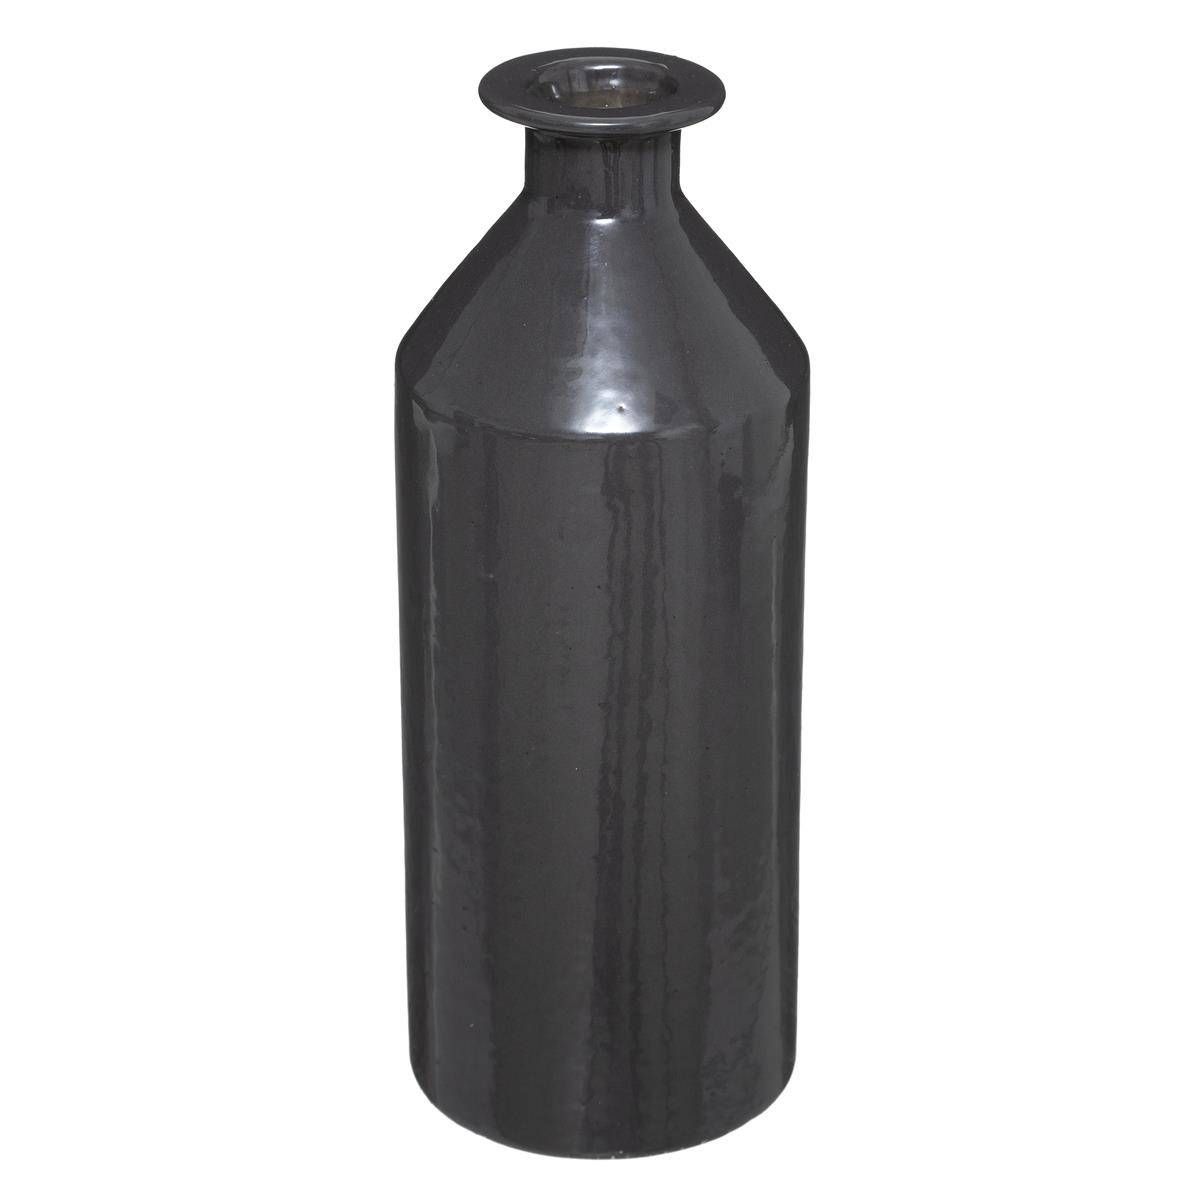 Atmosphera Černá keramická váza, 21,5 cm - EMAKO.CZ s.r.o.